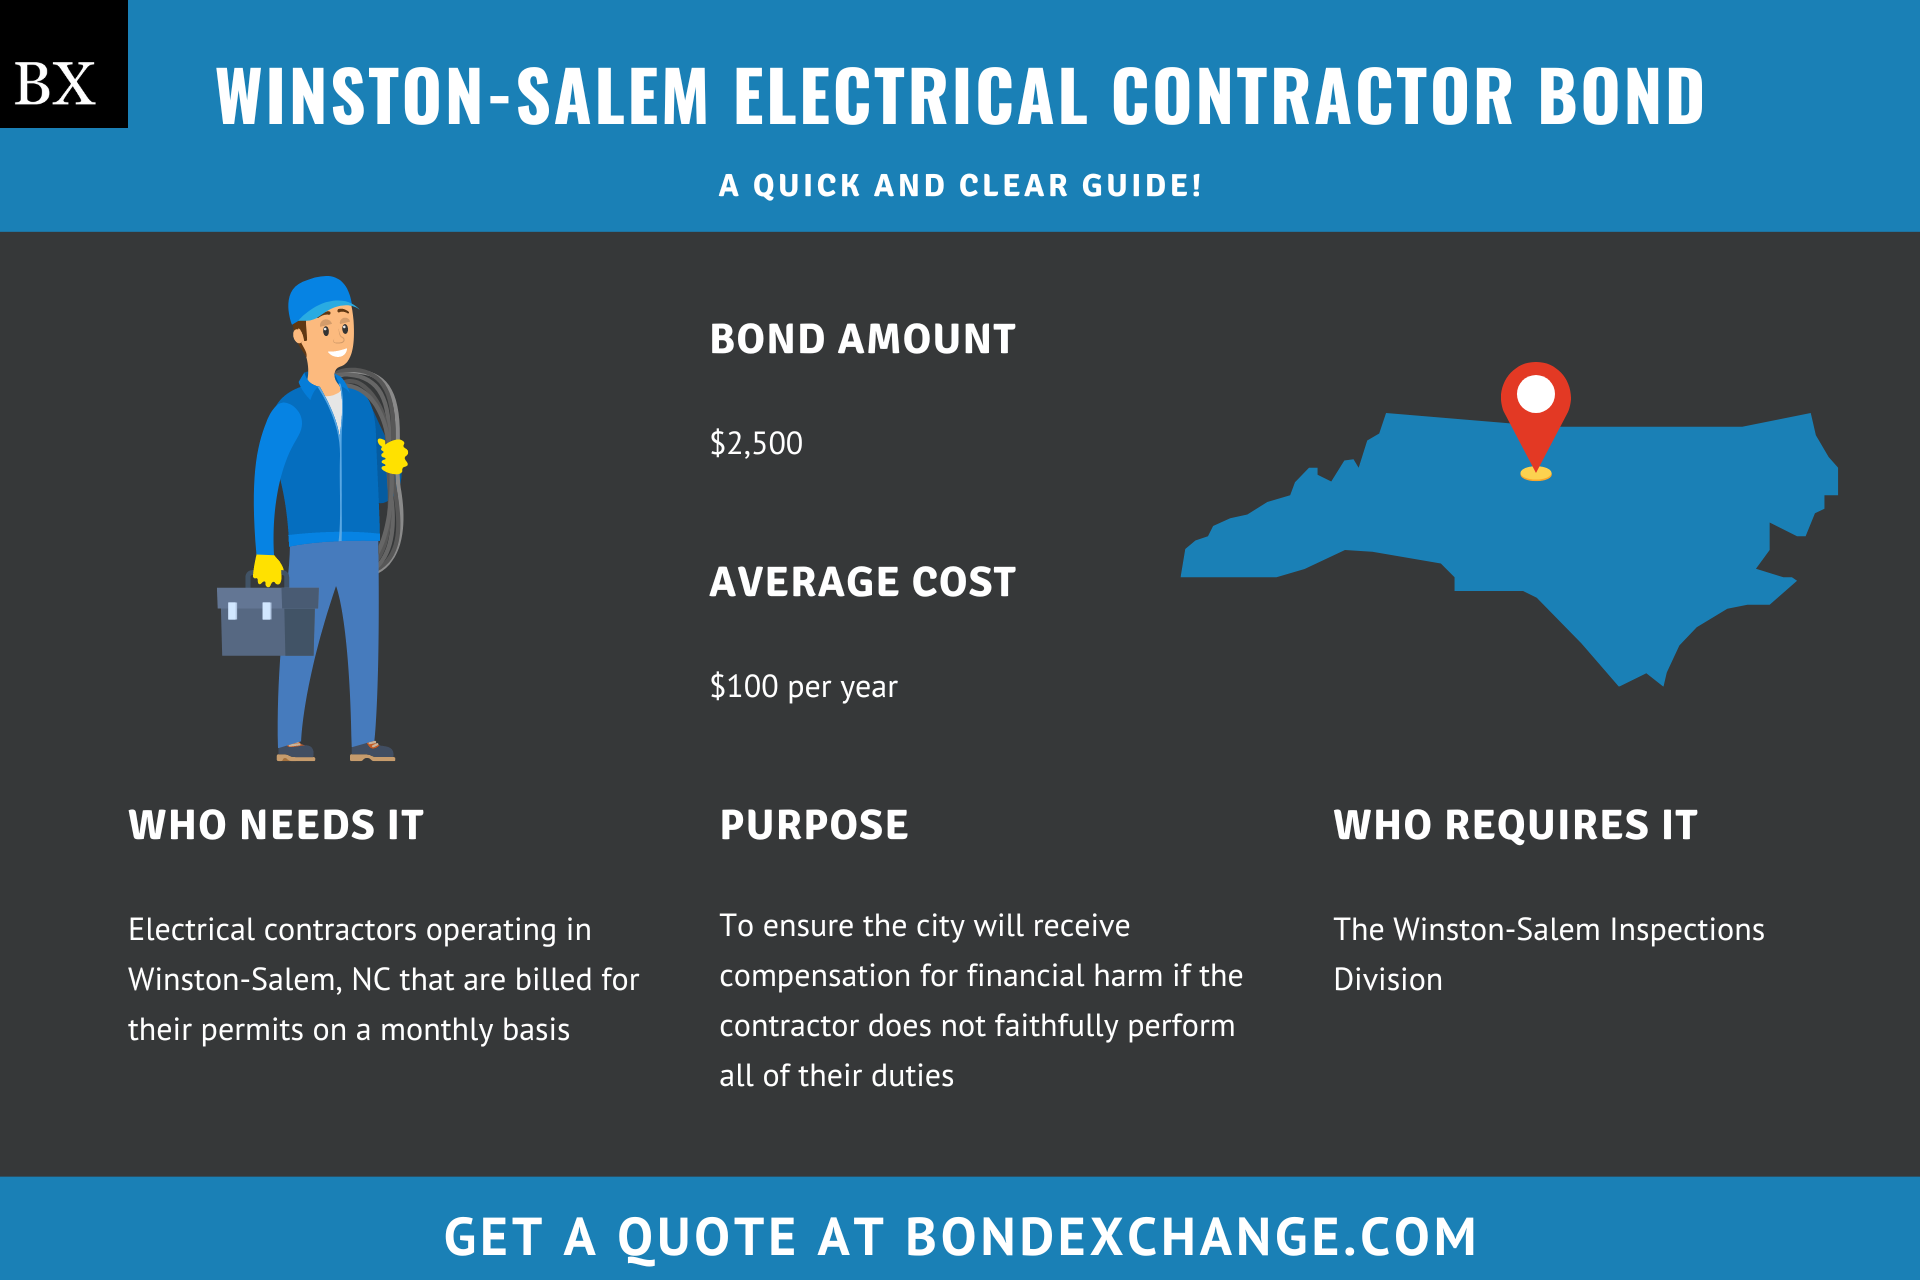 Winston-Salem Electrical Contractor Bond